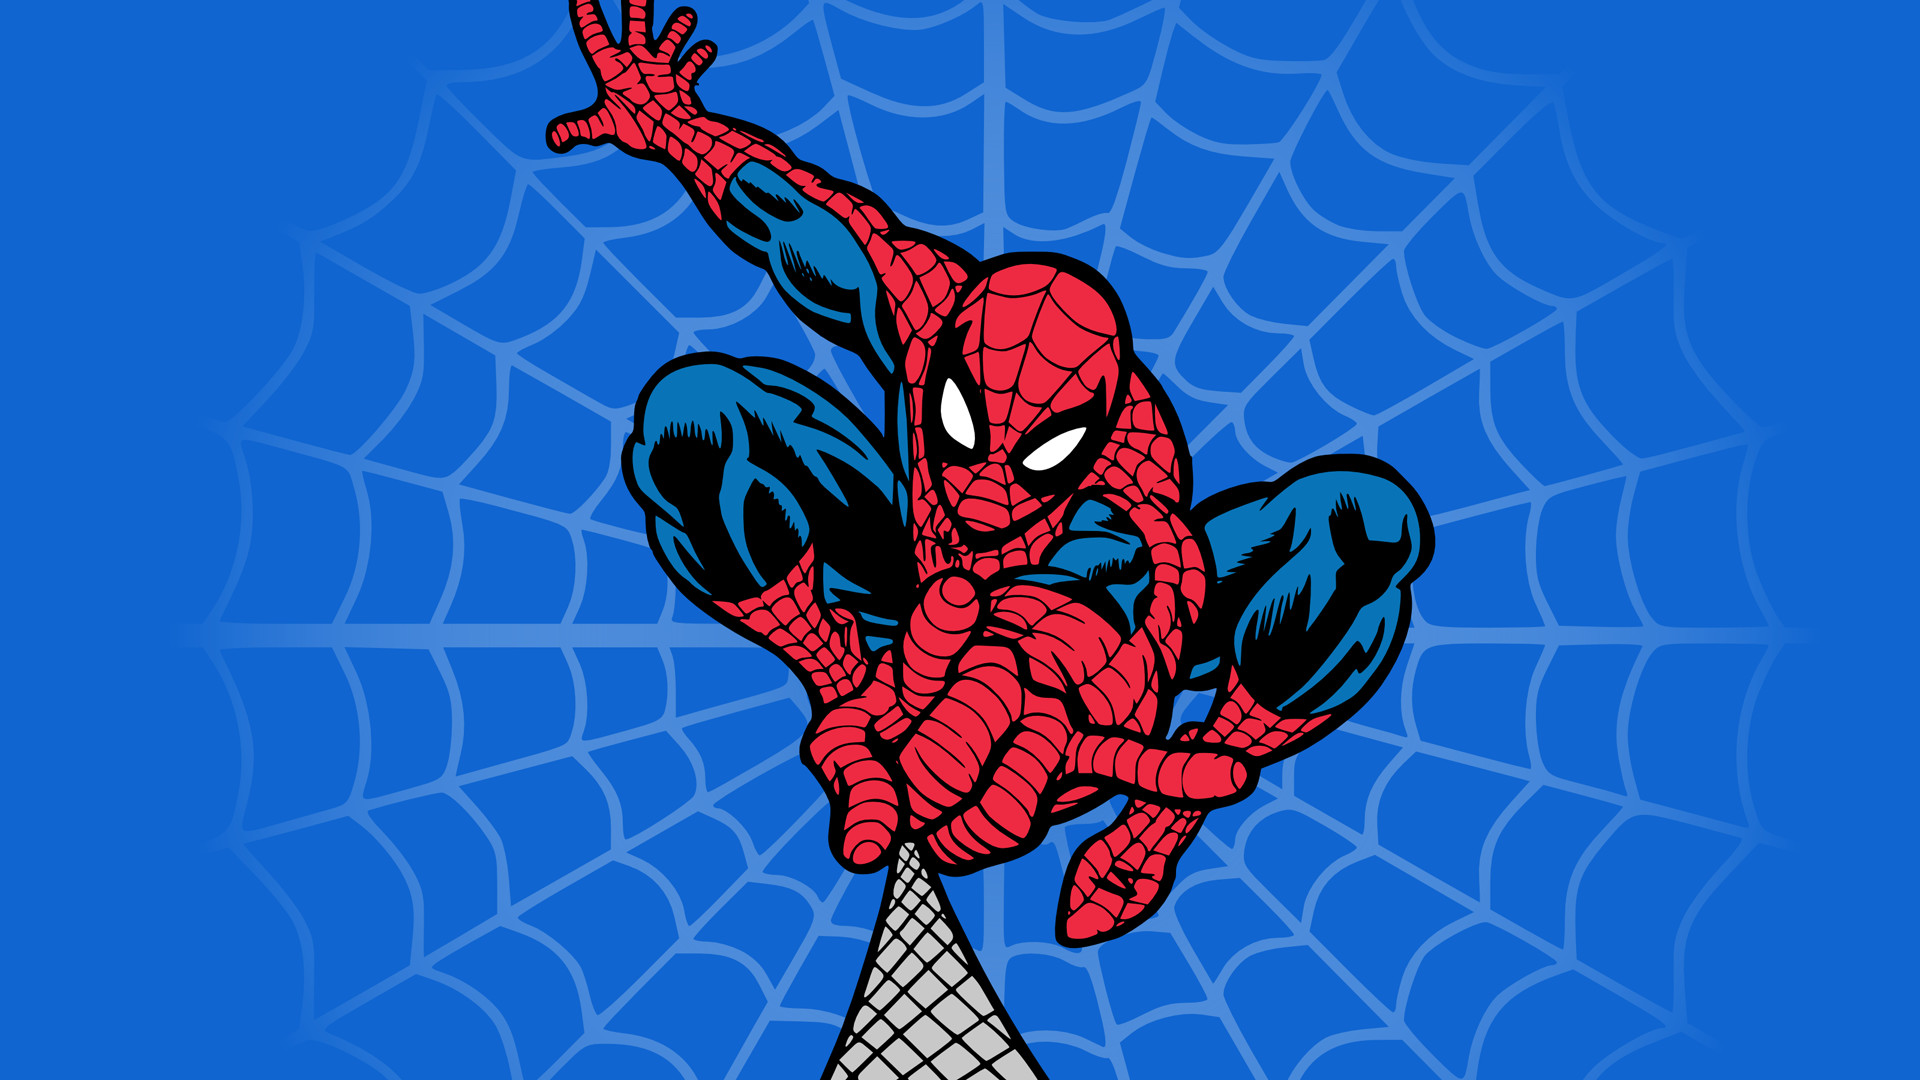 1920x1080 ... Spider Man 4 HD desktop wallpaper : High Definition : Fullscreen ...